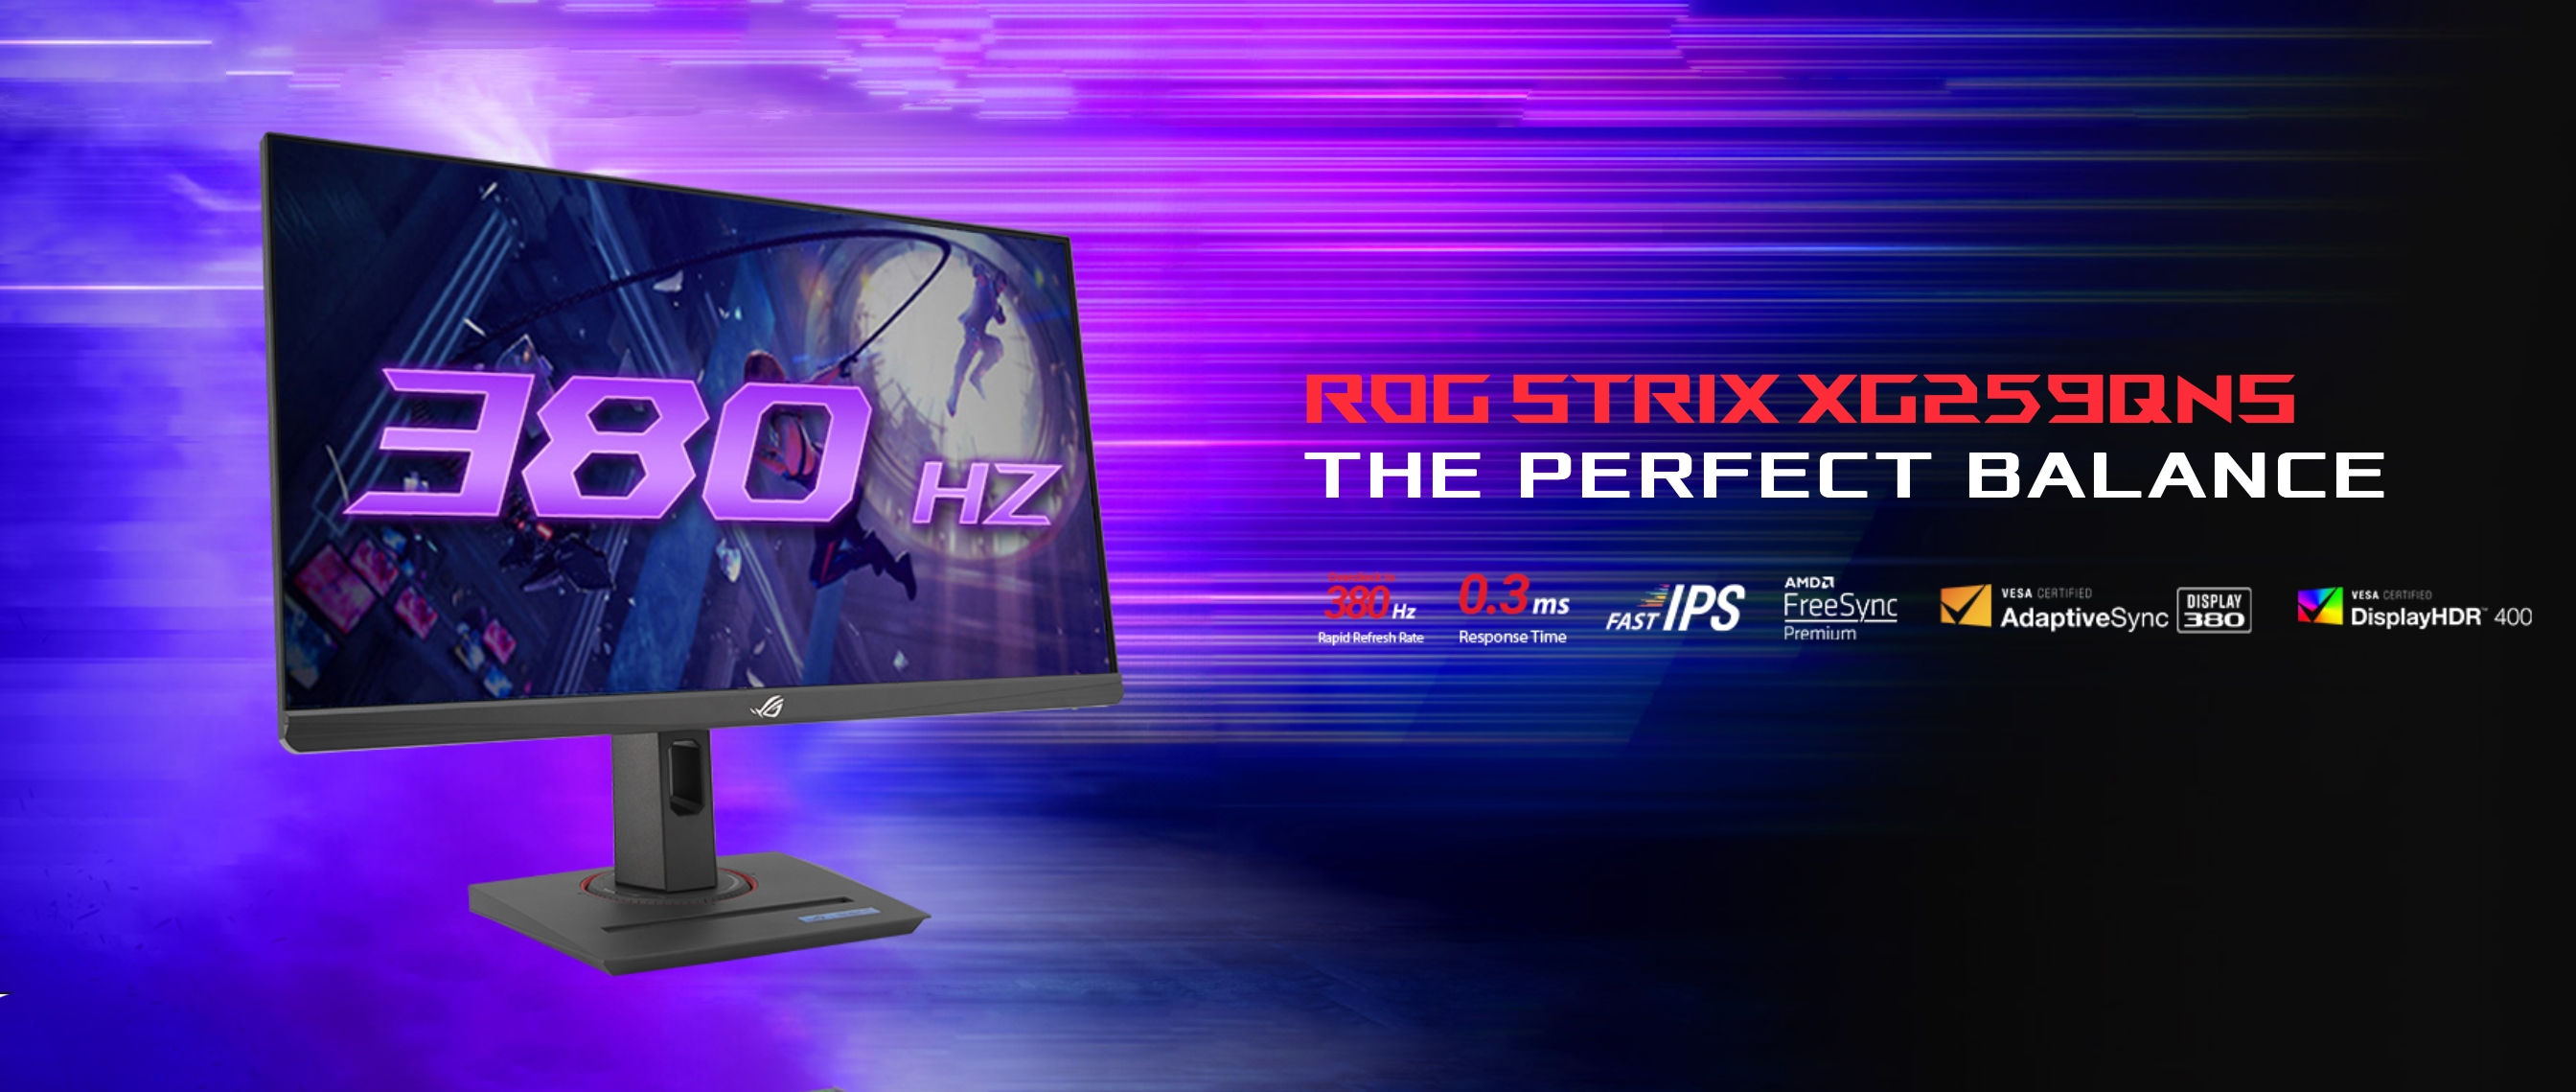 ASUS presenterar ROG Strix XG259QNS gamingmonitor med stöd för 380 Hz uppdateringsfrekvens